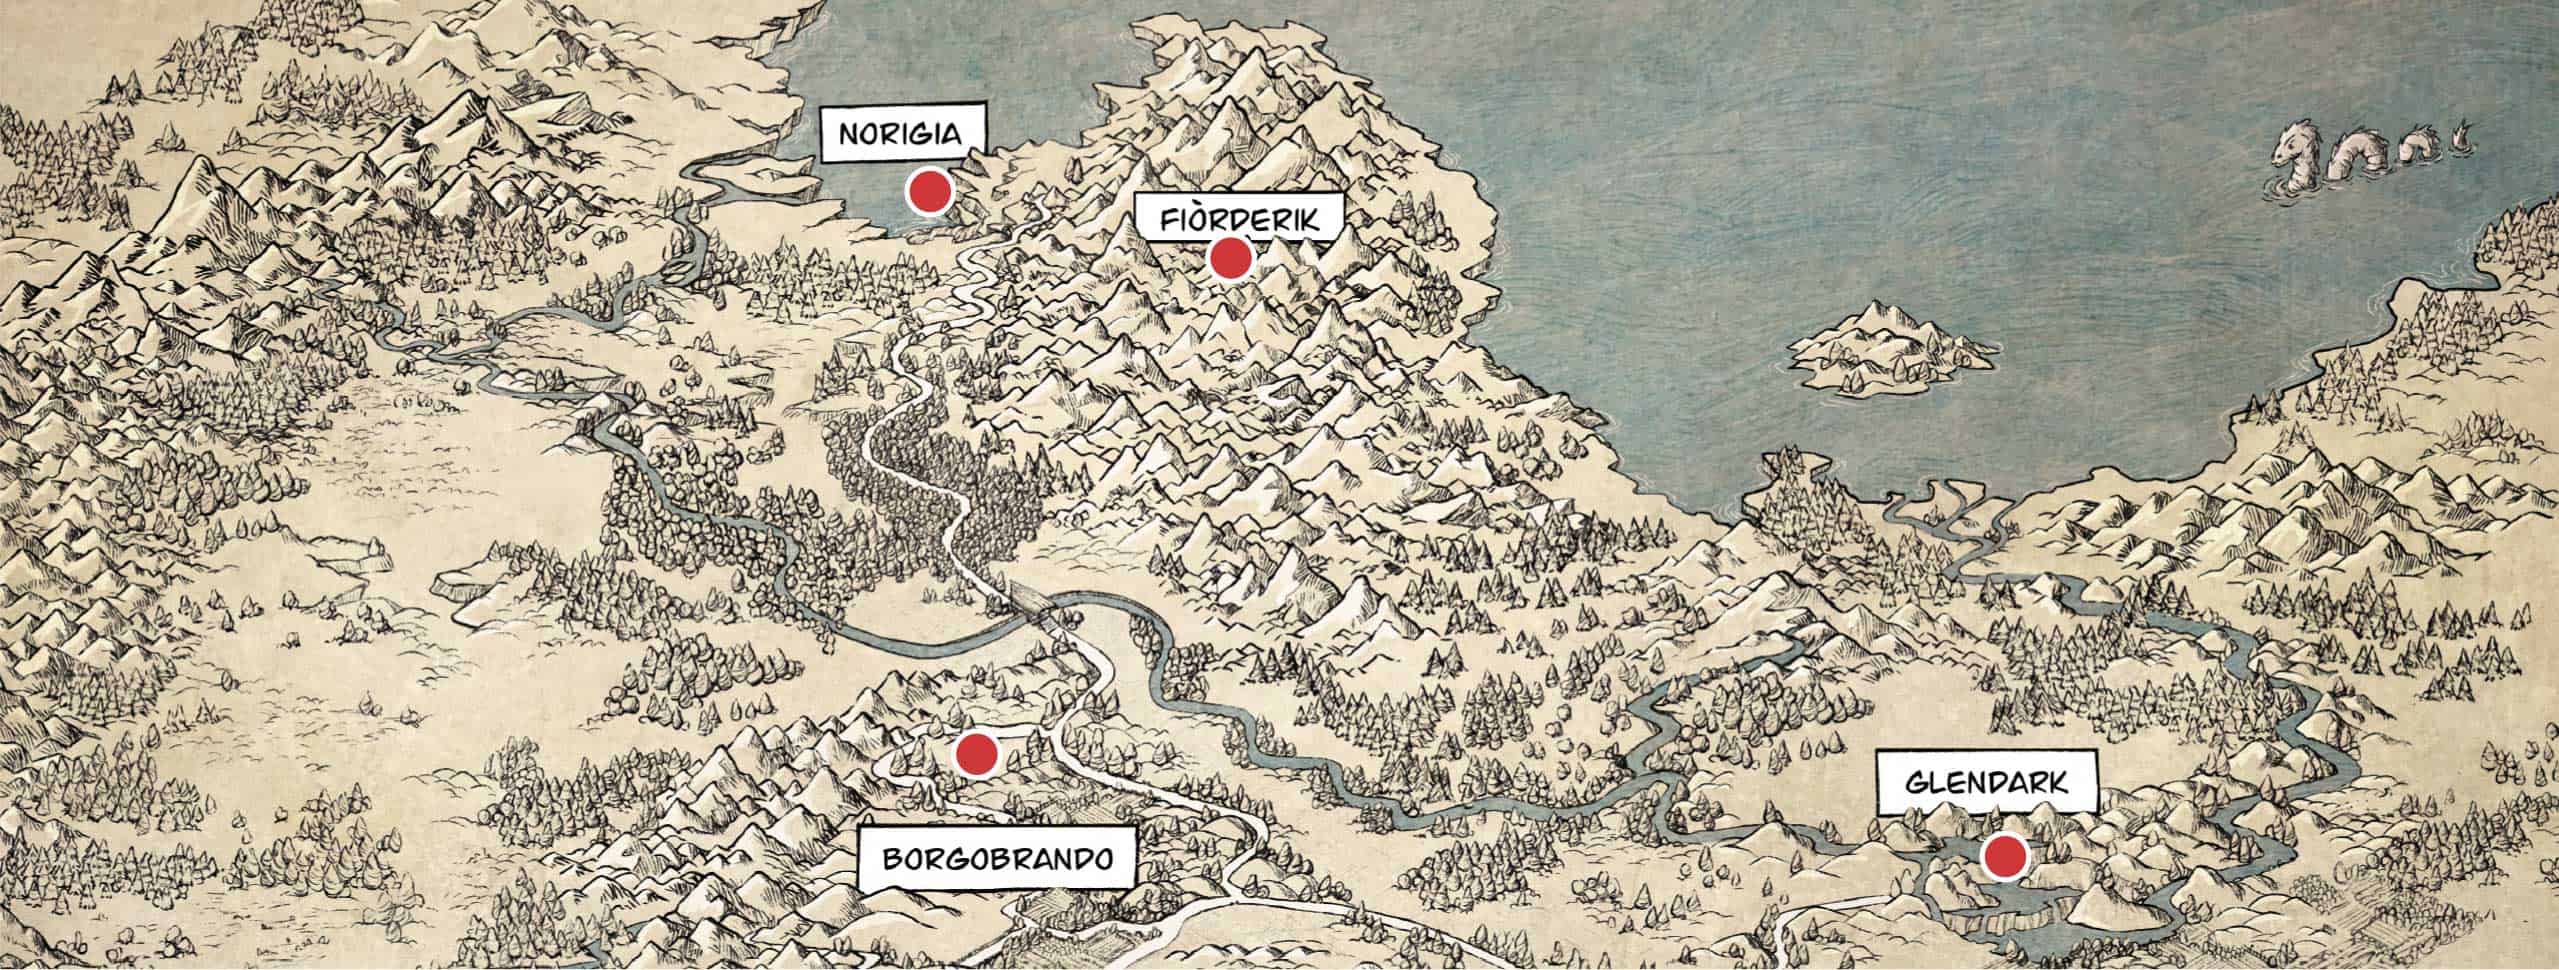 mappa mondo fantasy di Soeliok : le Terre popolate